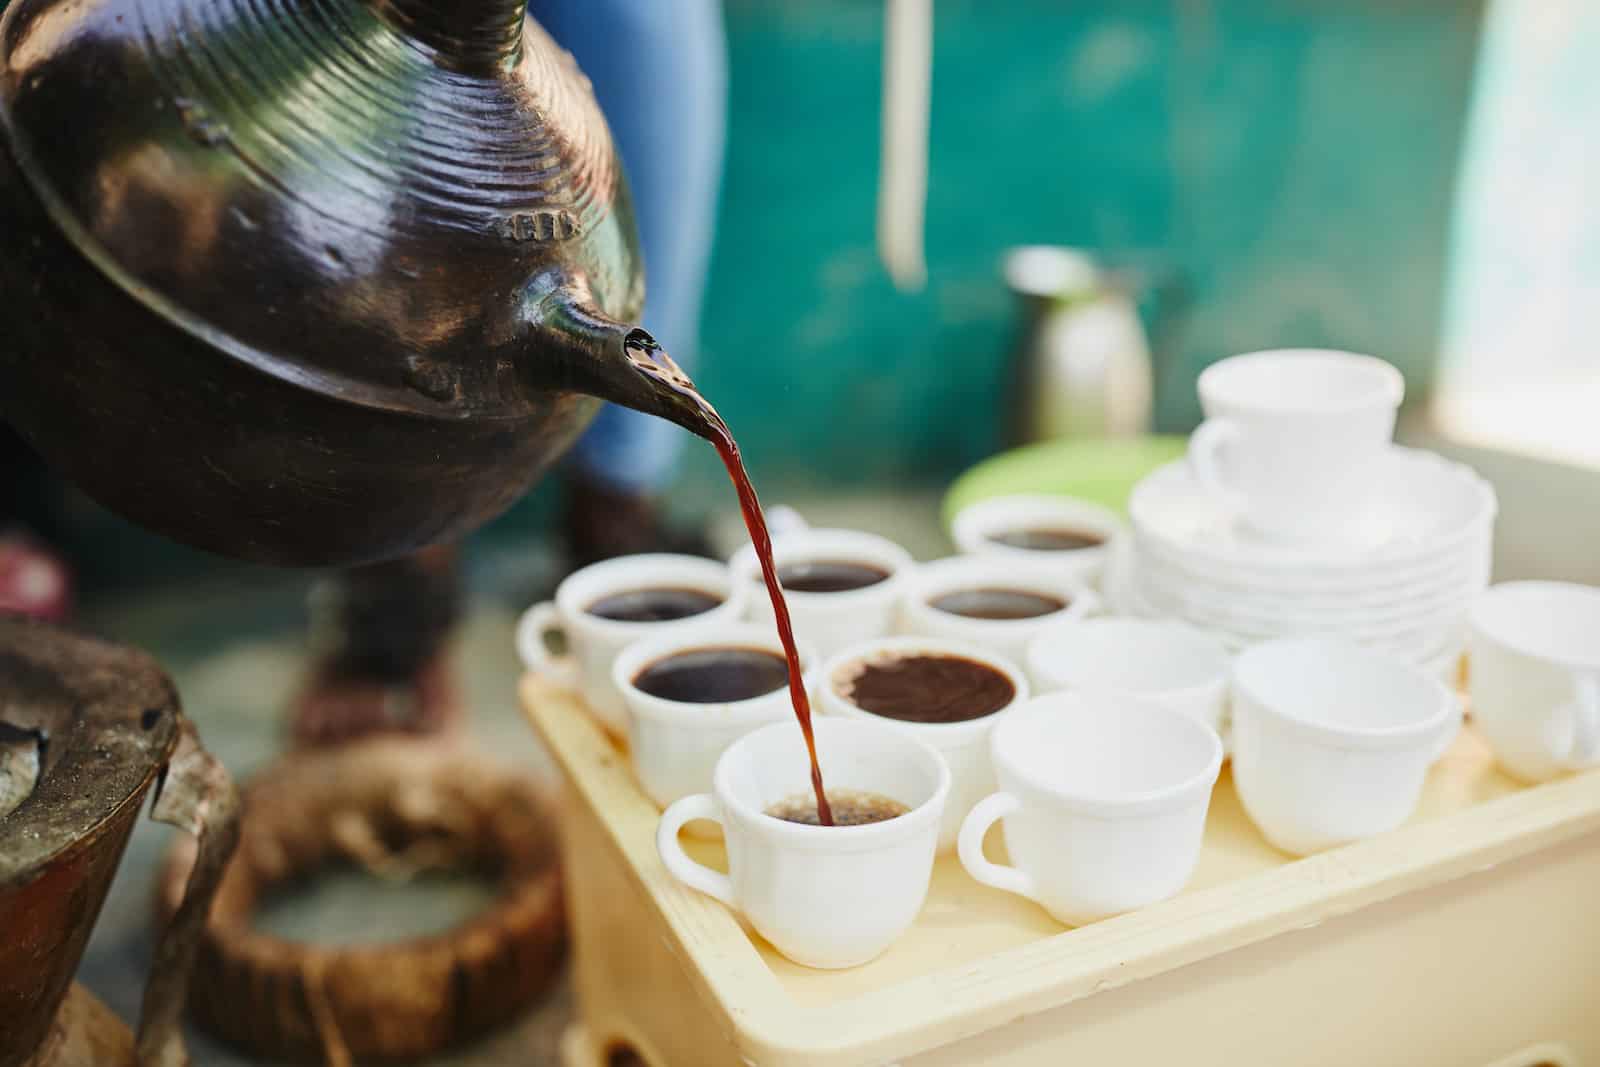 A jebena pours coffee into small cups.